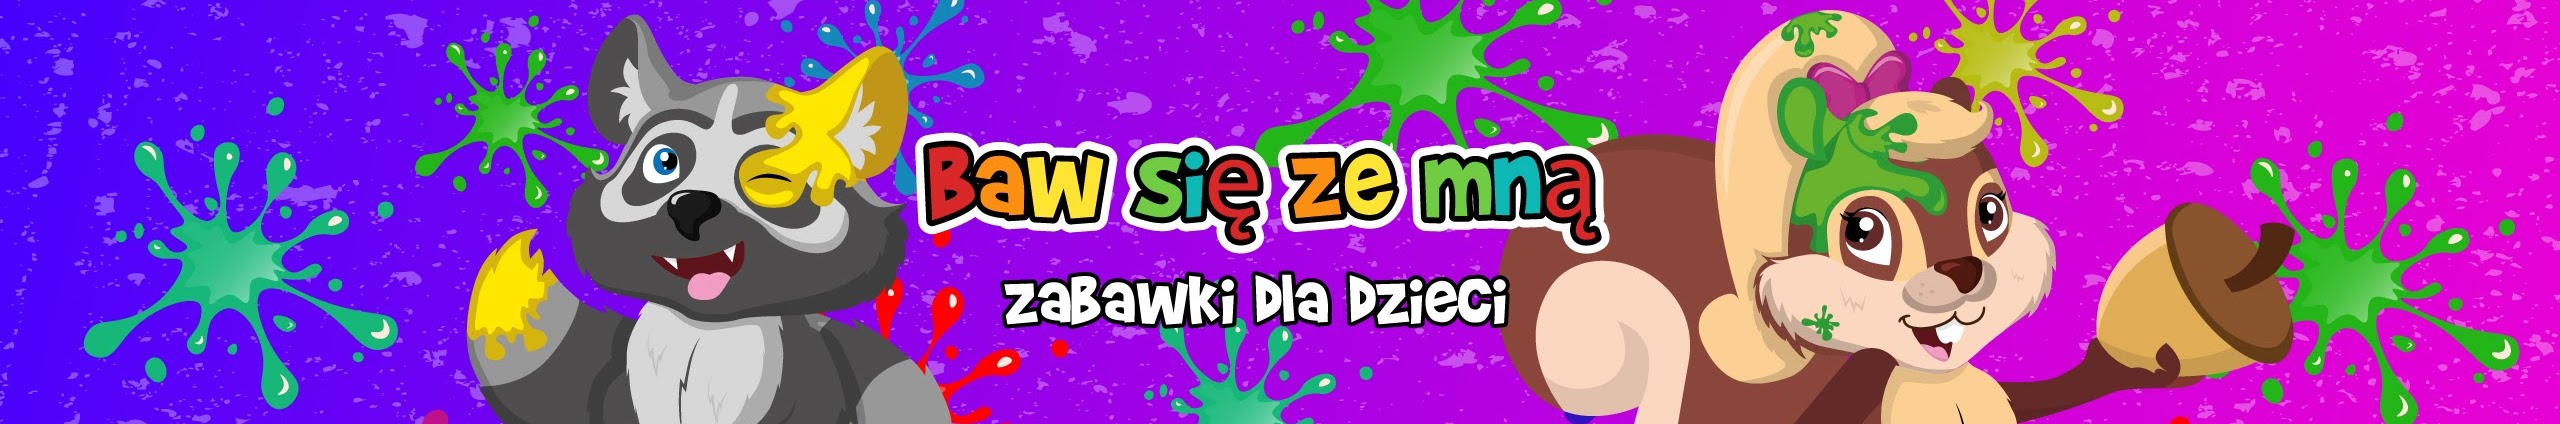 Baw się ze mną - zabawki dla dzieci - Kids Toys Polish YouTube Channel  Analytics and Report - Powered by NoxInfluencer Mobile